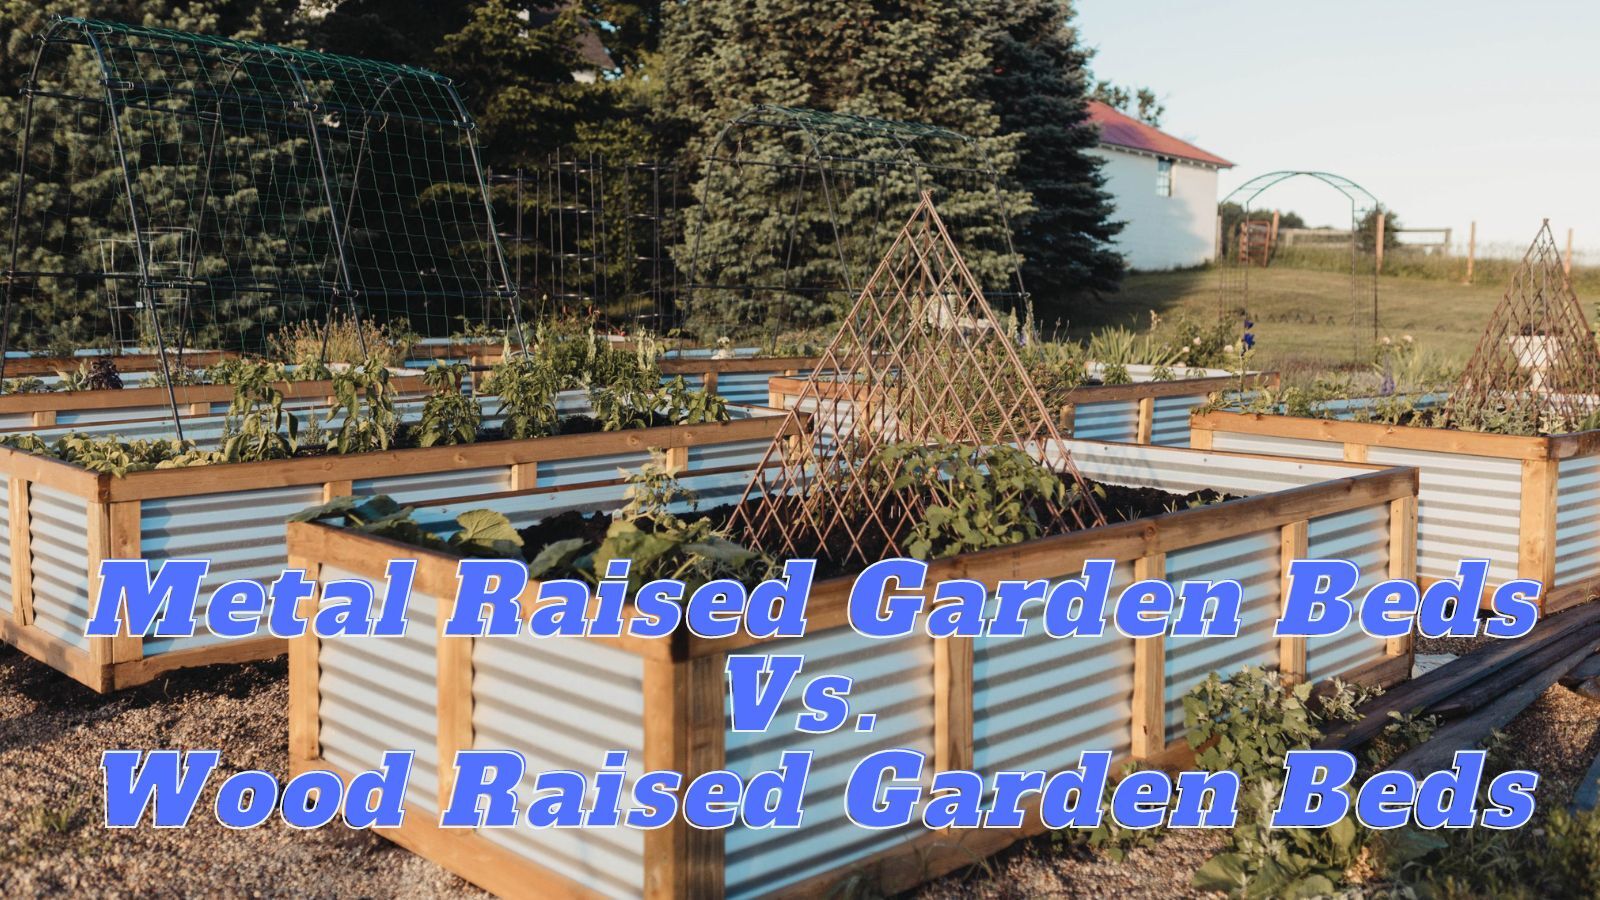 Metal Raised Garden Beds Vs. Wood Raised Garden Beds (pros & cons)